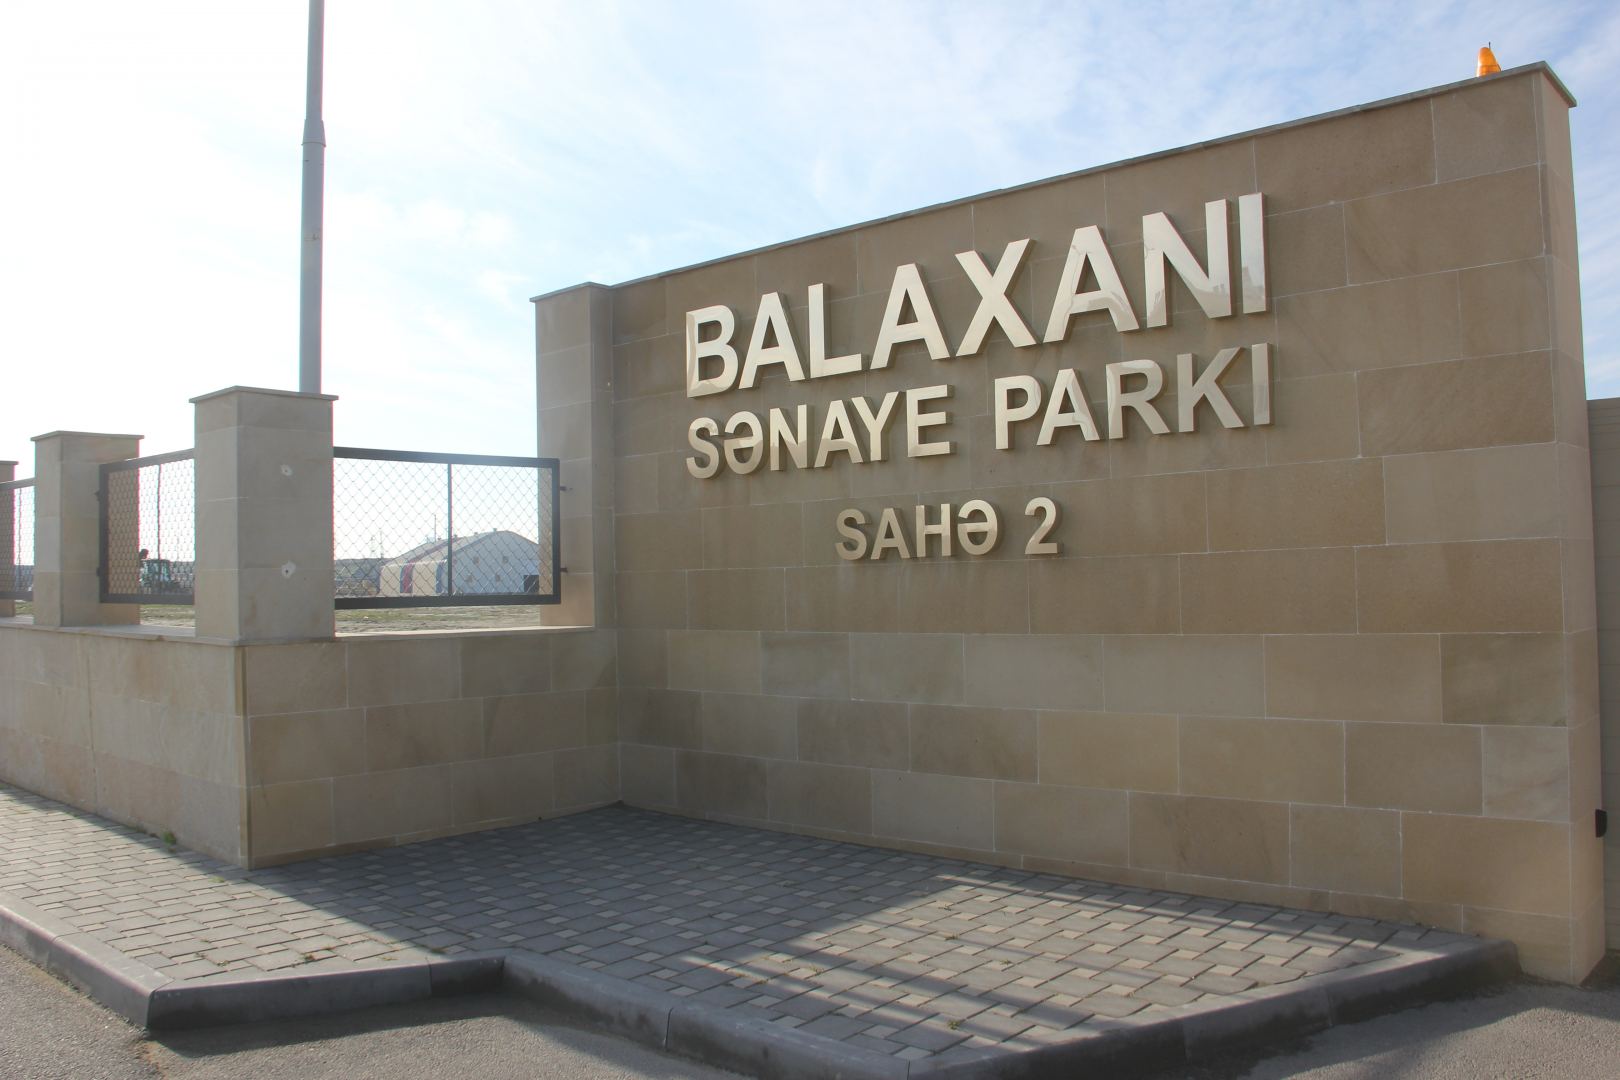 Balaxanı Sənaye Parkının rezidenti beynəlxalq mükafata layiq görülüb (FOTO)